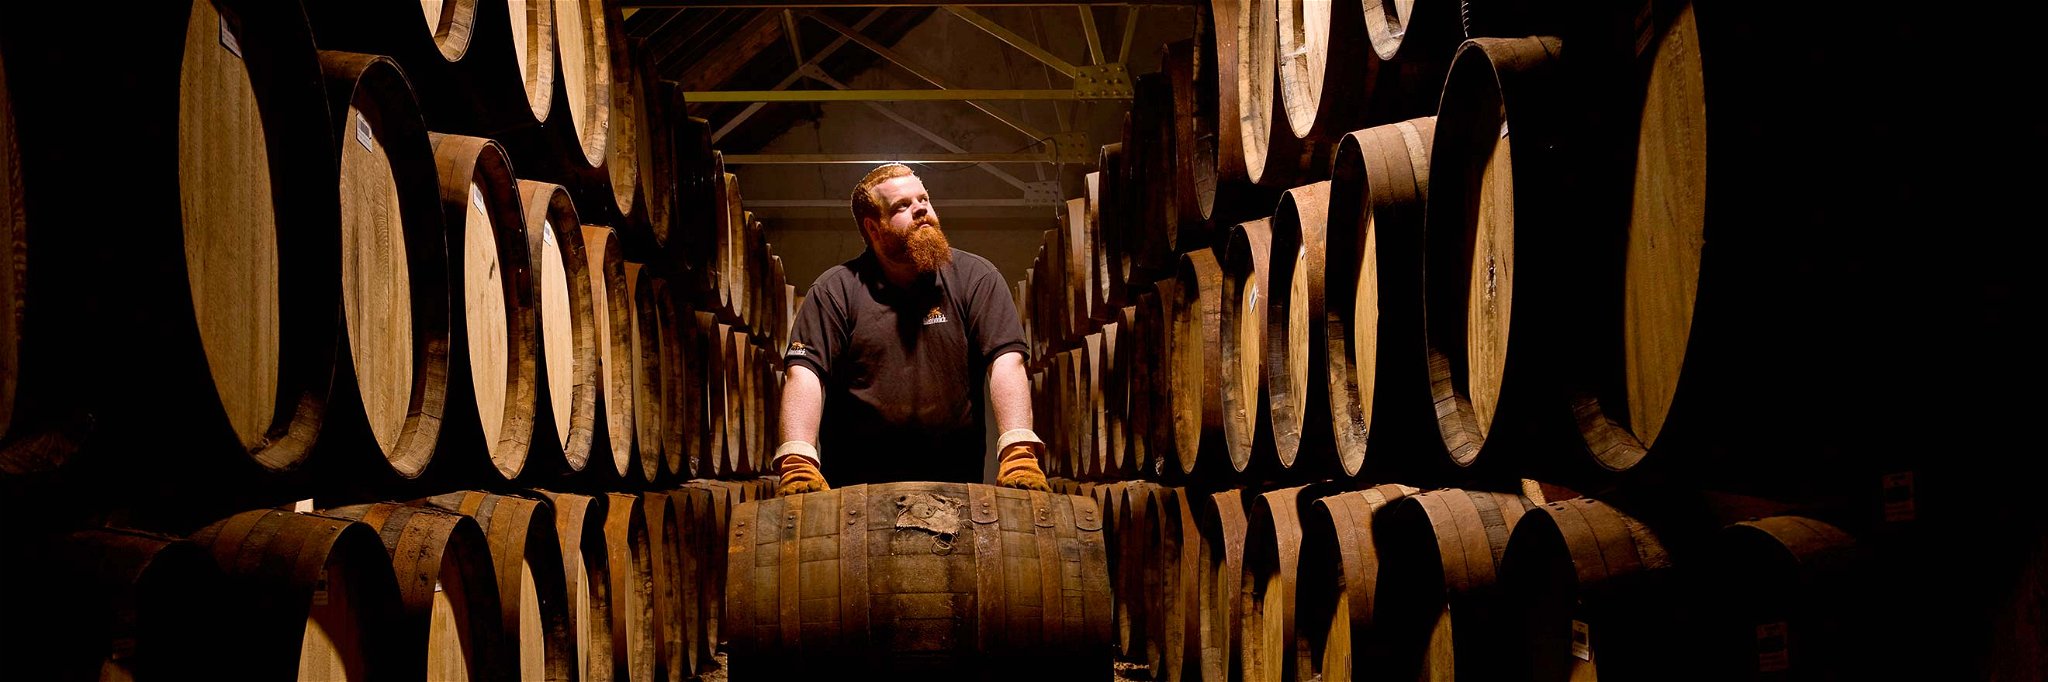 Im Lager von Glenfiddich: Hier in Schottland wird Whisky seit Jahrhunderten gebrannt.